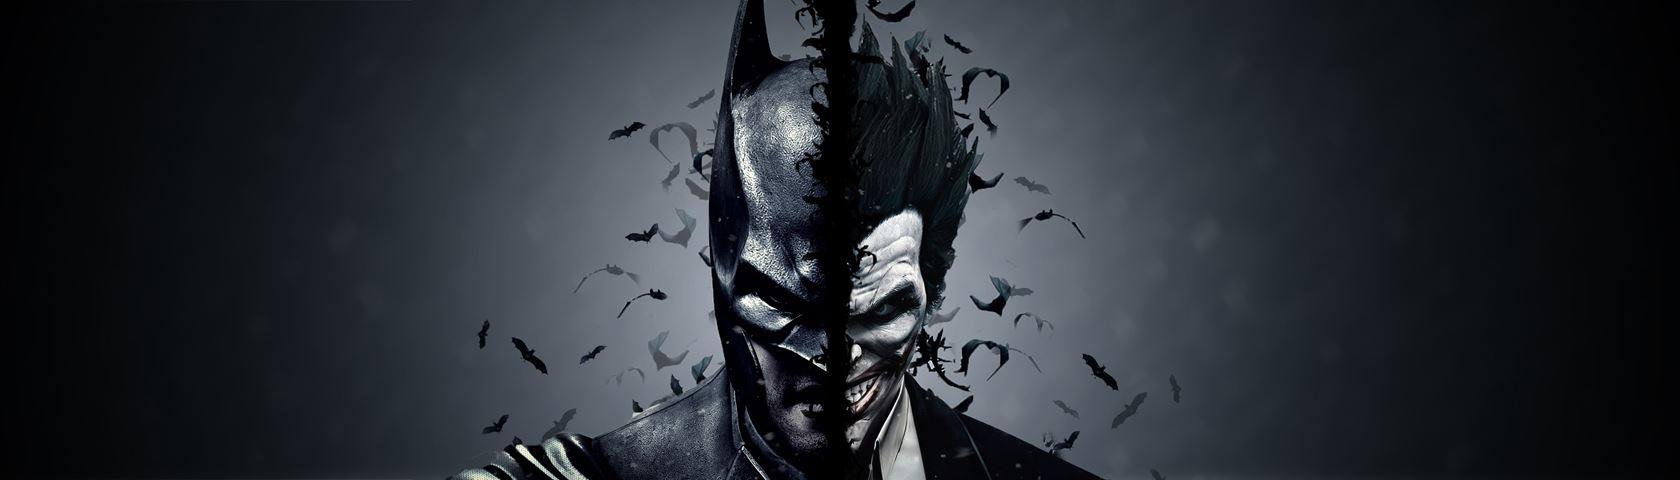 Batman and Joker • Image • WallpaperFusion